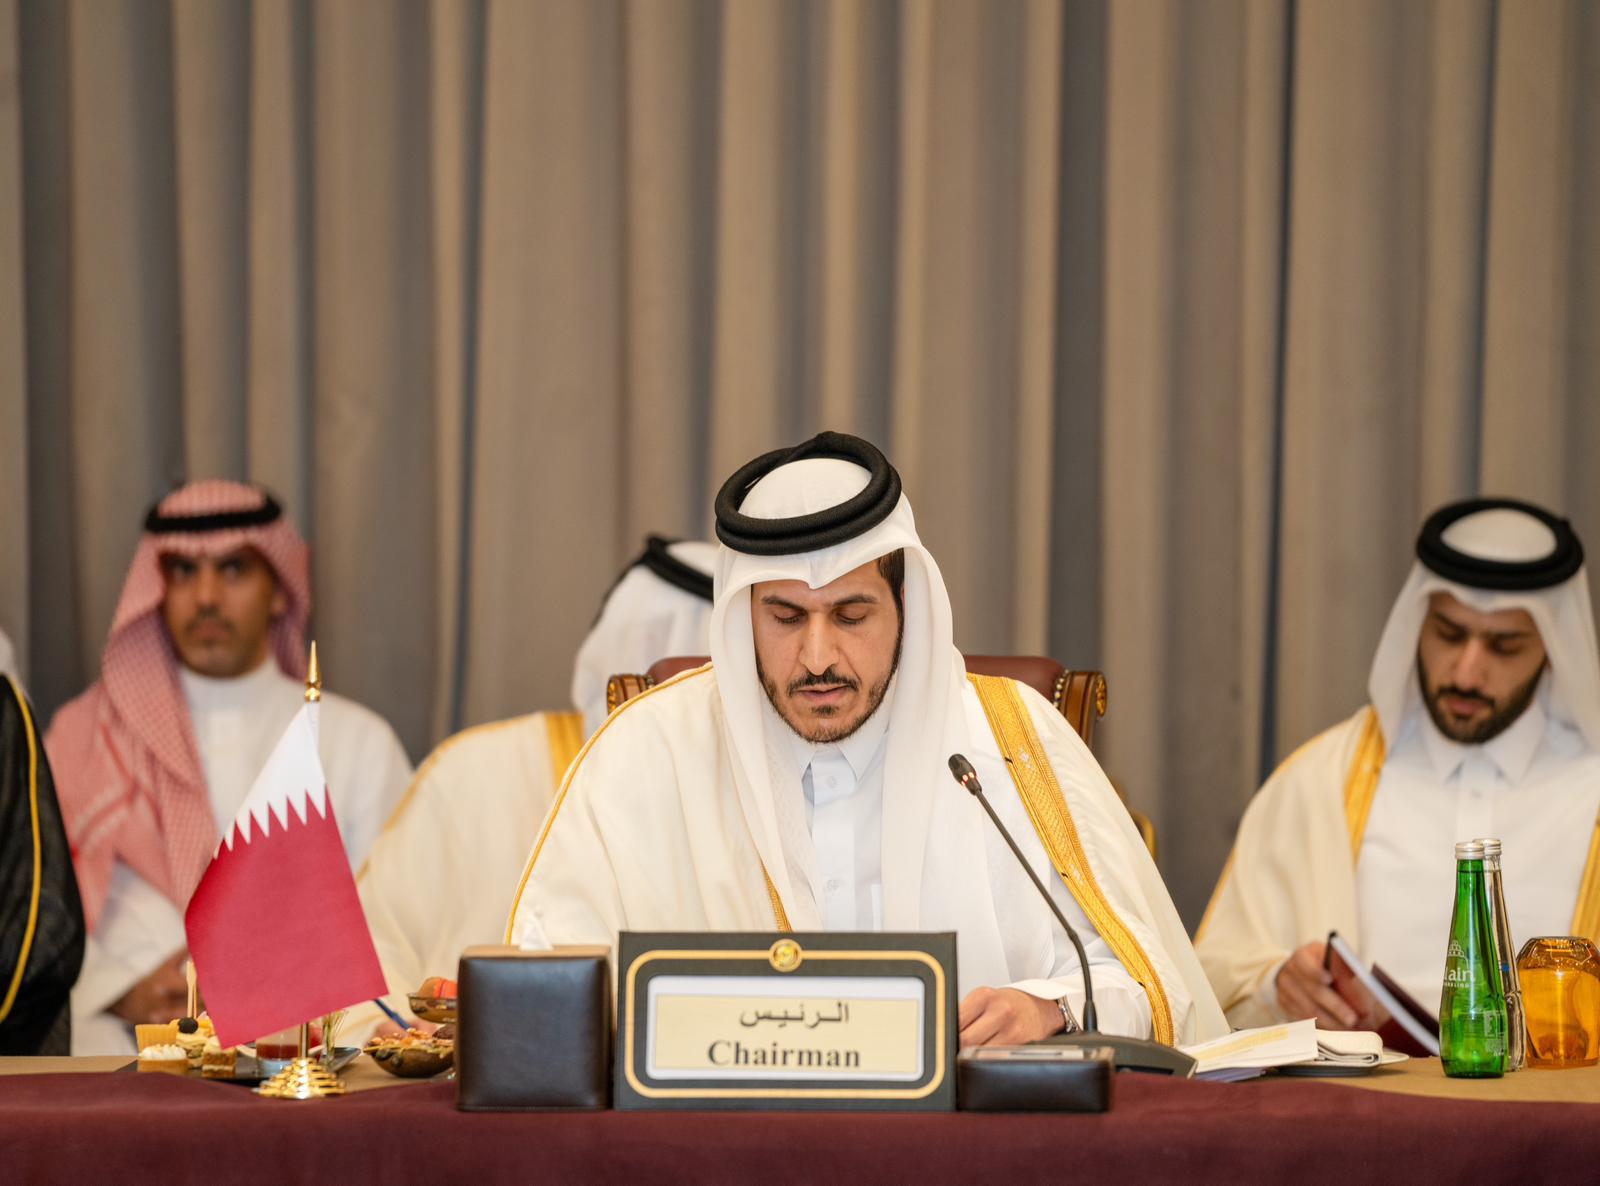 سعادة وزير التجارة والصناعة يترأس وفد دولة قطر في المؤتمر الوزاري الثالث عشر لمنظمة التجارة العالمية في أبو ظبي